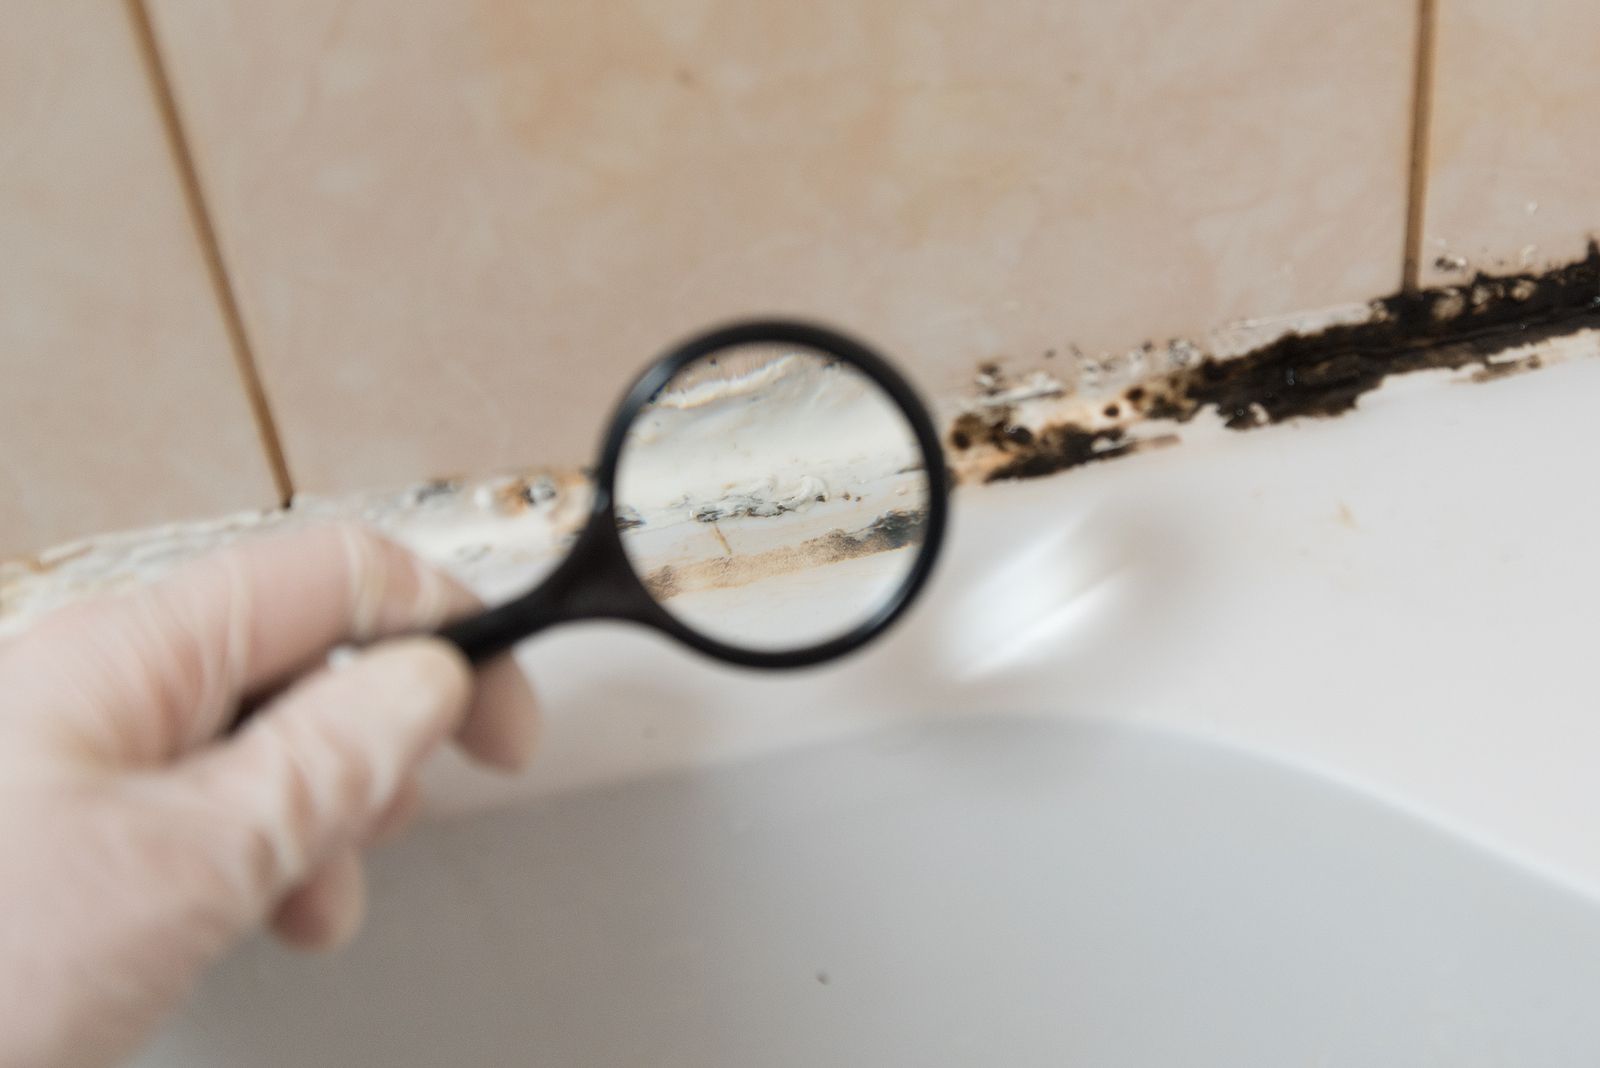 Cómo eliminar los hongos del baño?